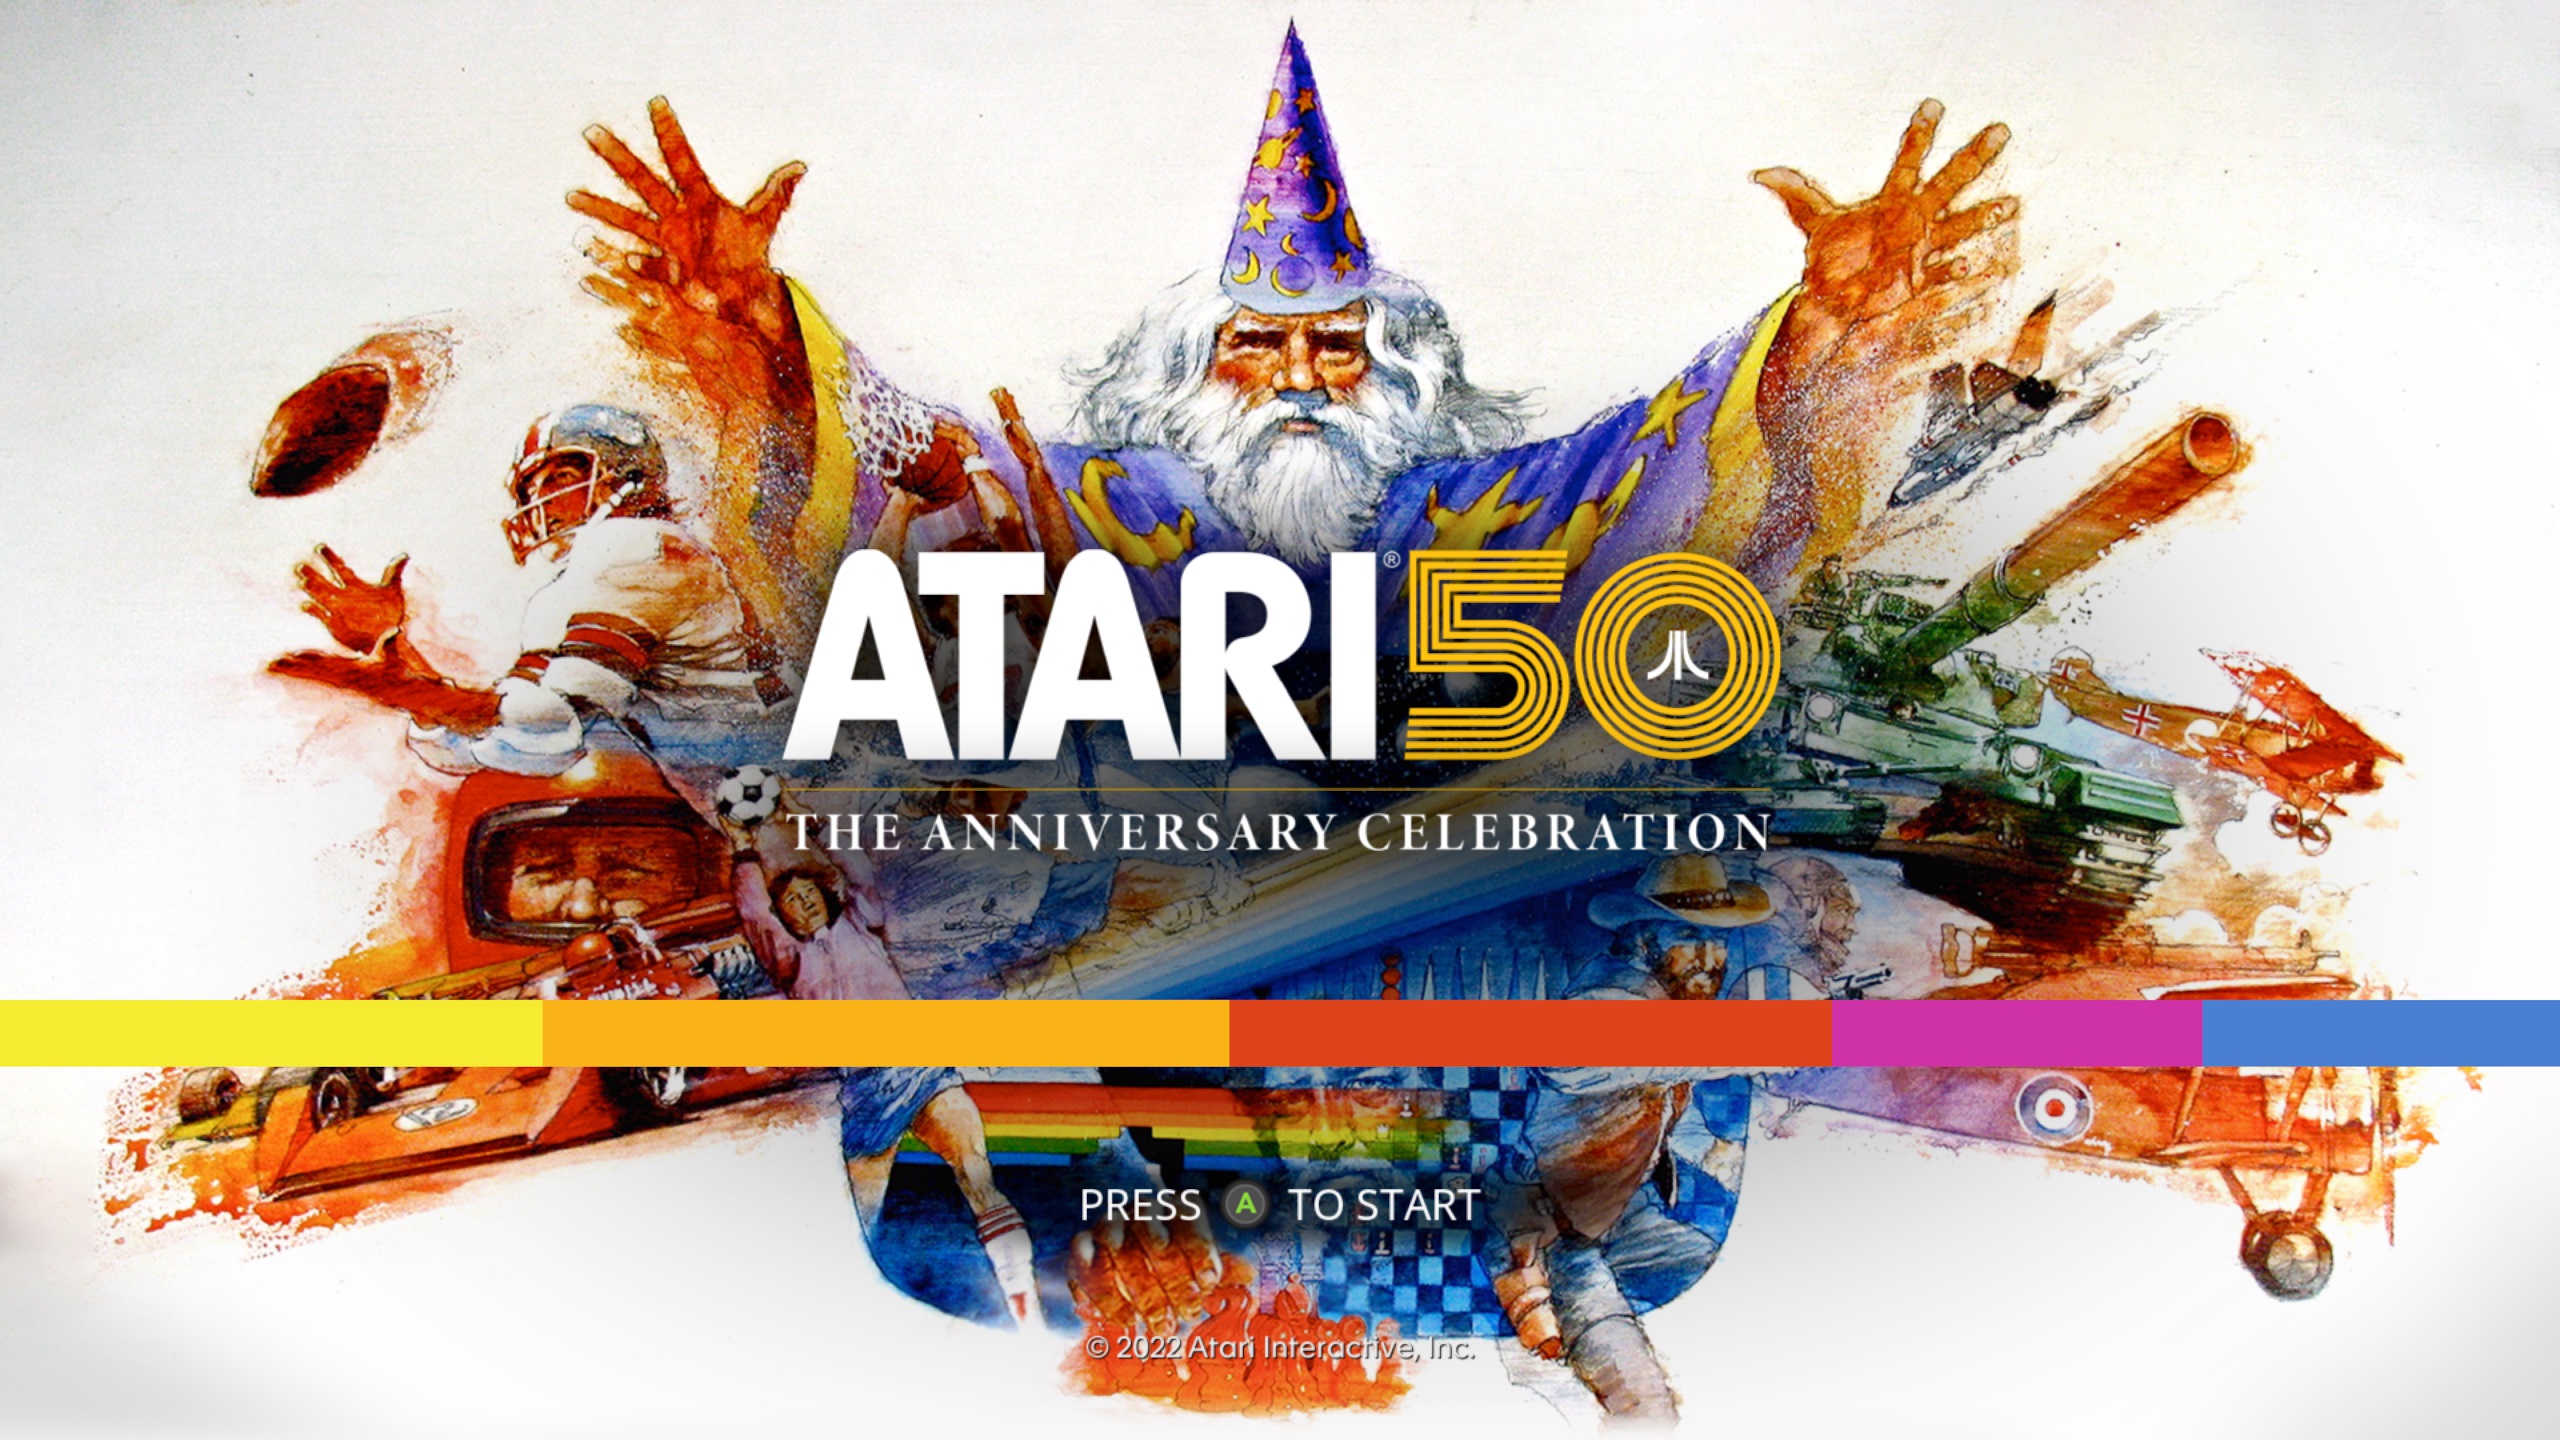 Screenshot of the splash screen from Atari 50: The Anniversary Celebration